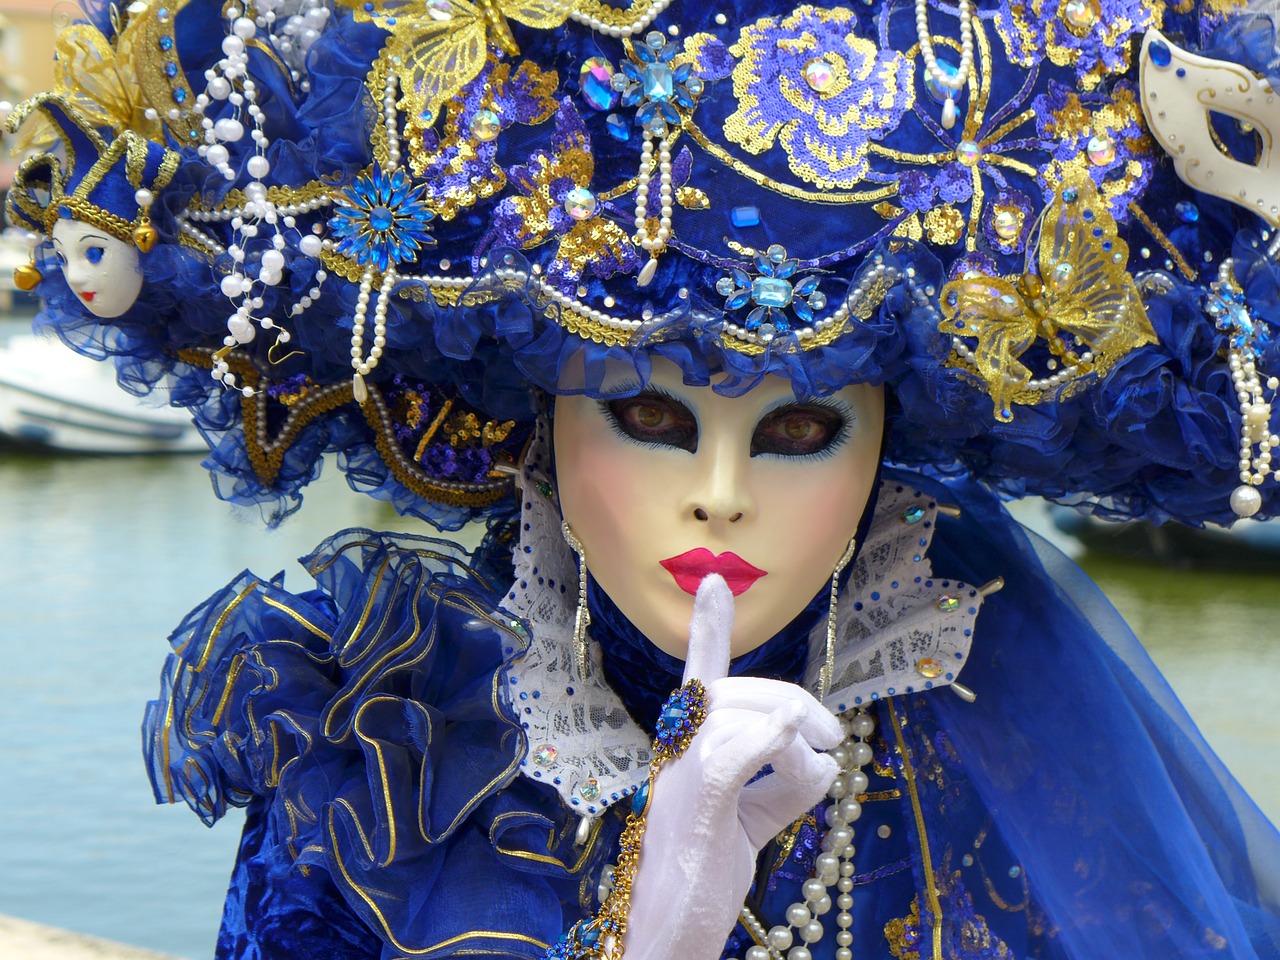 Karneval in Venedig Itlaien ist ein absolutes Highlight und lohnt sich alle mal!